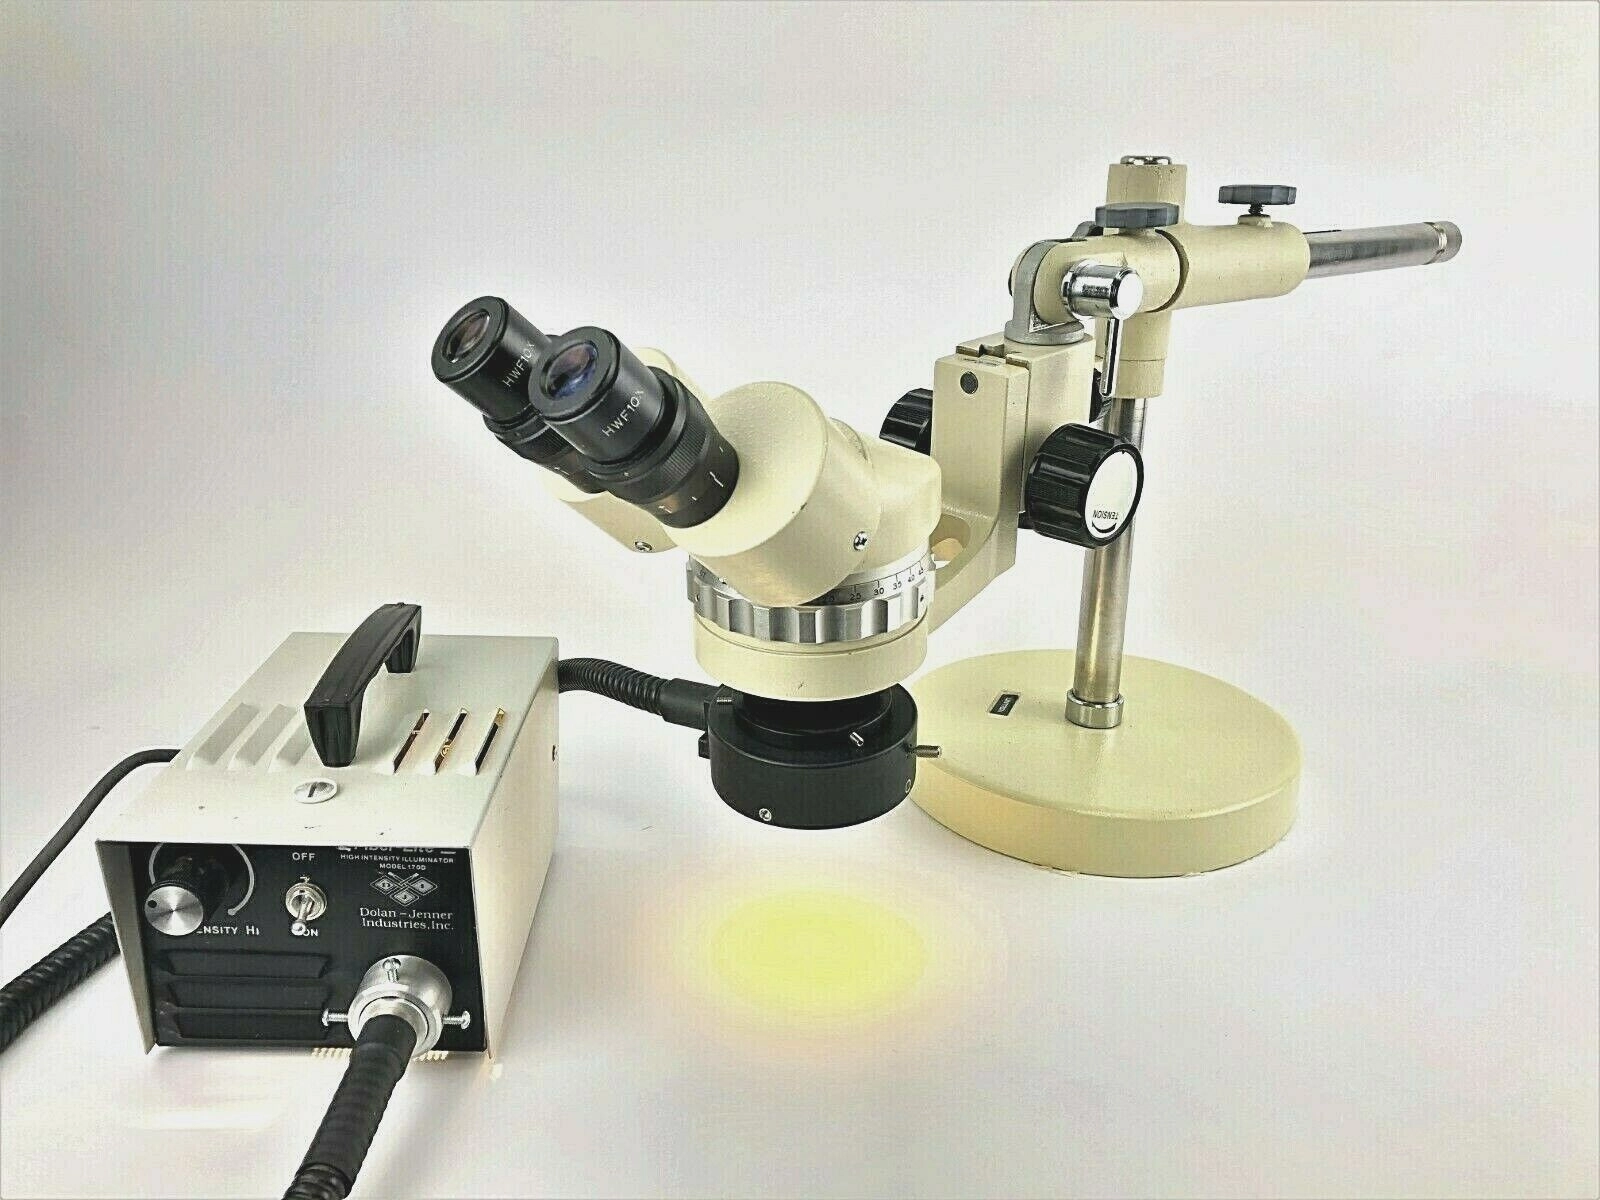 Untiron ZSB Stereozoom Microscopio 7-45x Ricondizi